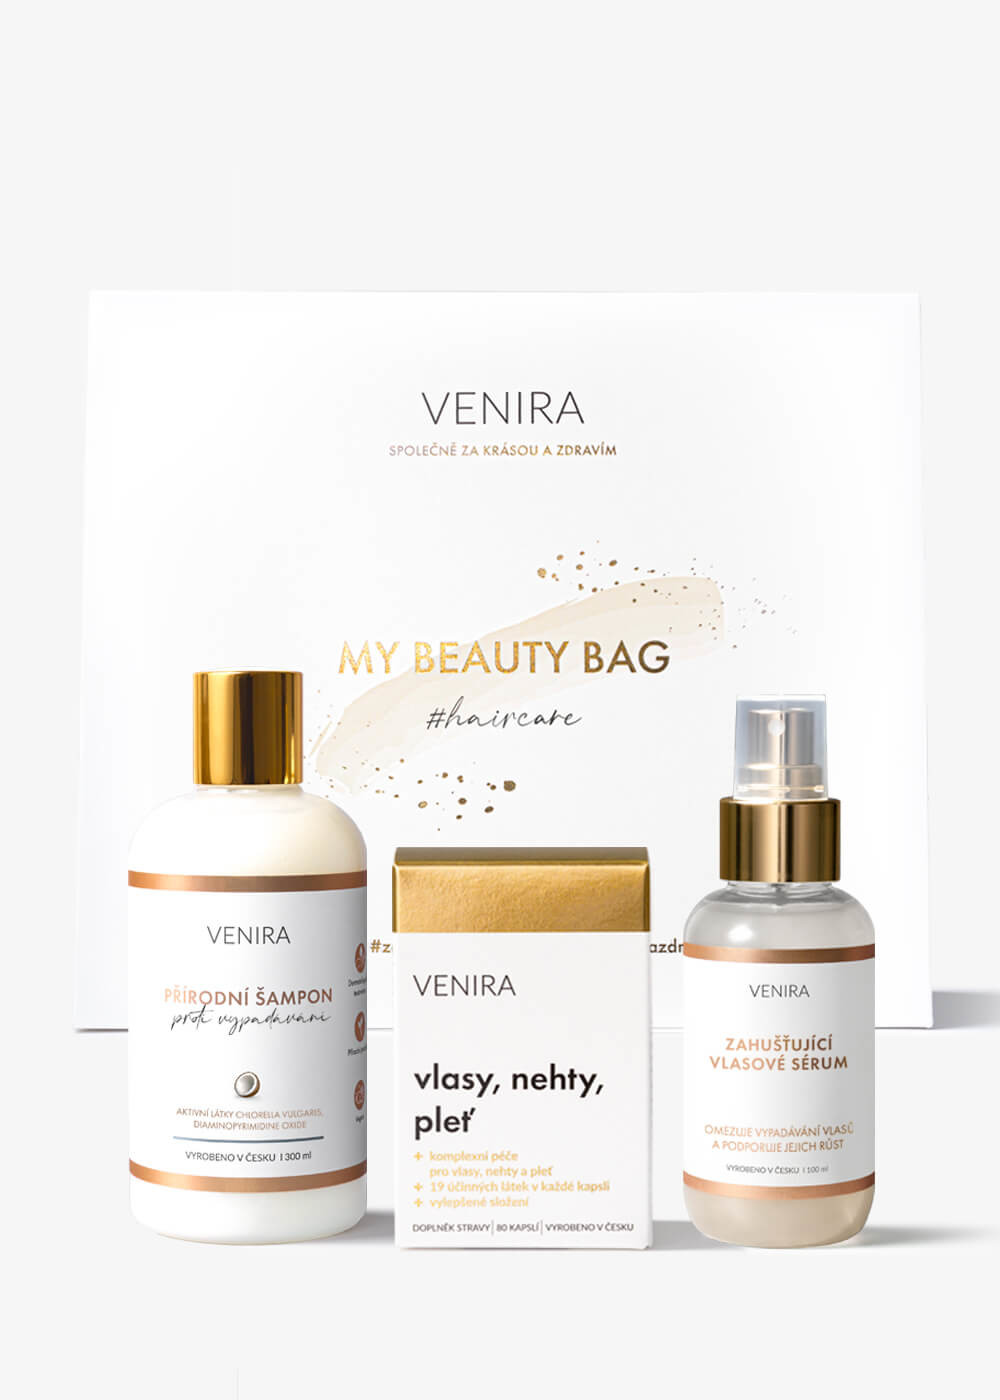 VENIRA beauty bag, dárková sada proti vypadávání vlasů - kapsle pro vlasy, šampon proti vypadávání, zahušťující vlasové sérum